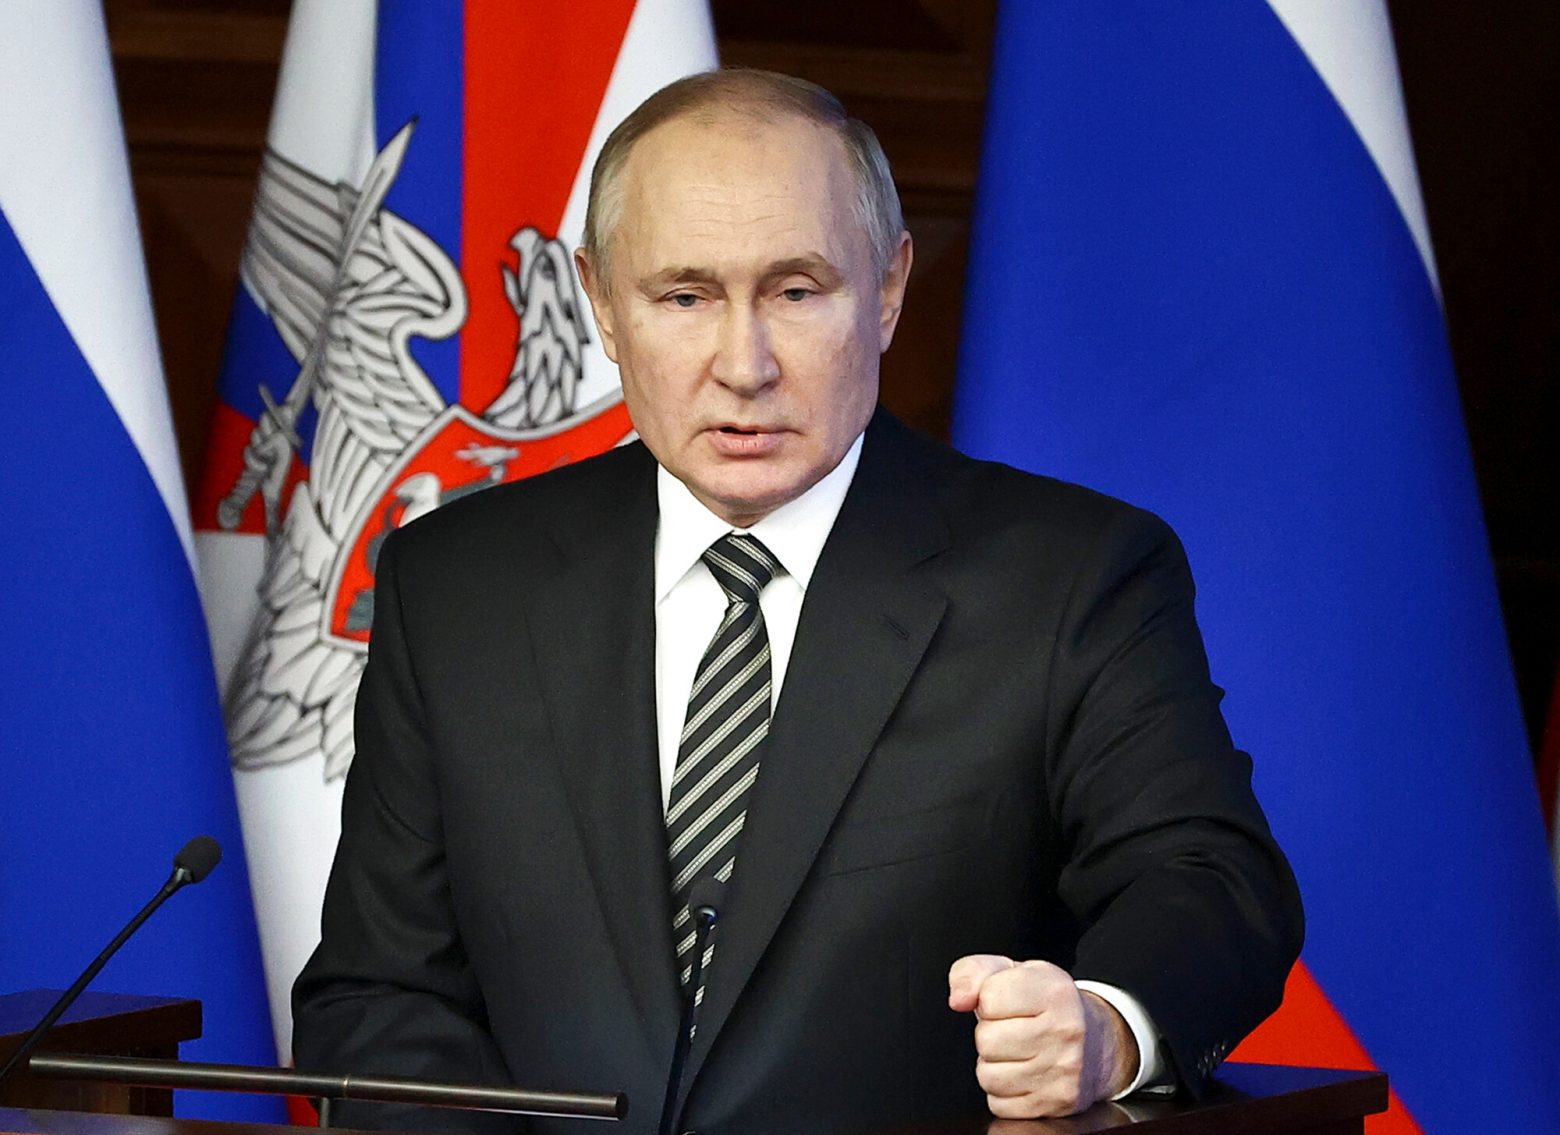 Πόλεμος στην Ουκρανία: Ο Πούτιν απειλεί ανοιχτά τη Δύση για την αποστολή όπλων - «Σκληρή απάντηση...»